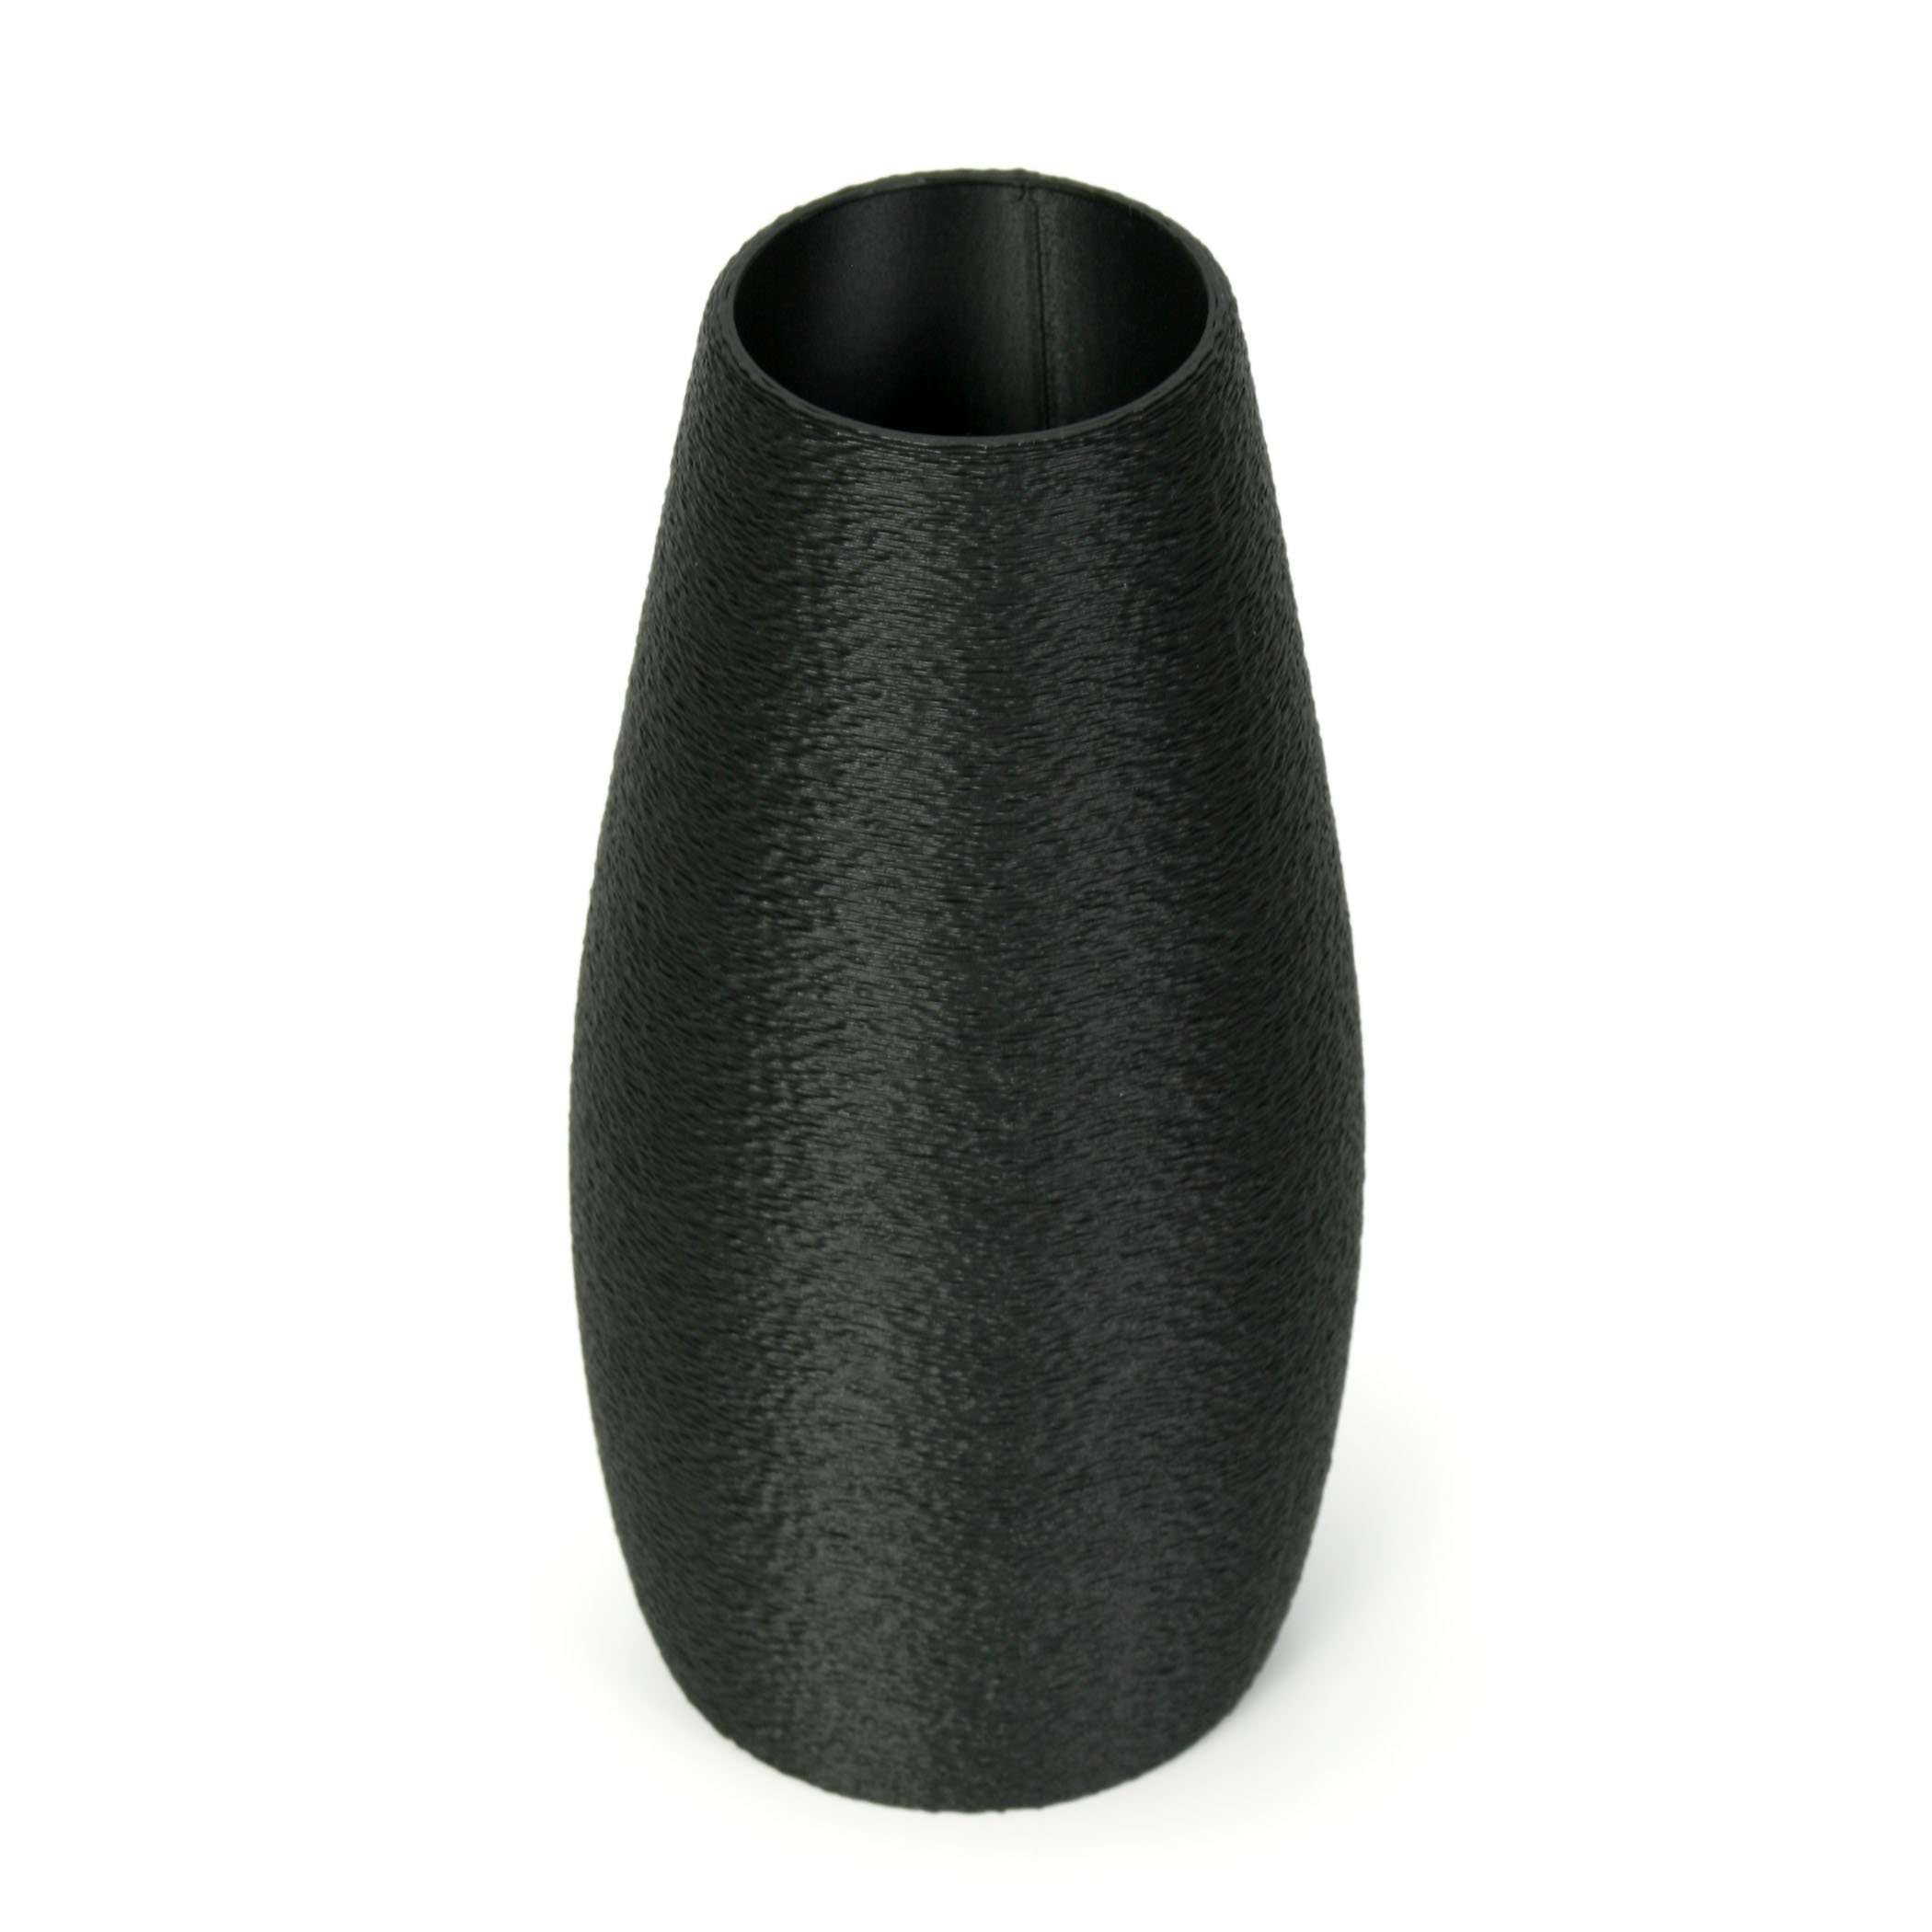 & Rohstoffen; Dekorative Vase Black Dekovase Kreative – wasserdicht nachwachsenden bruchsicher Feder Designer Bio-Kunststoff, aus Blumenvase aus